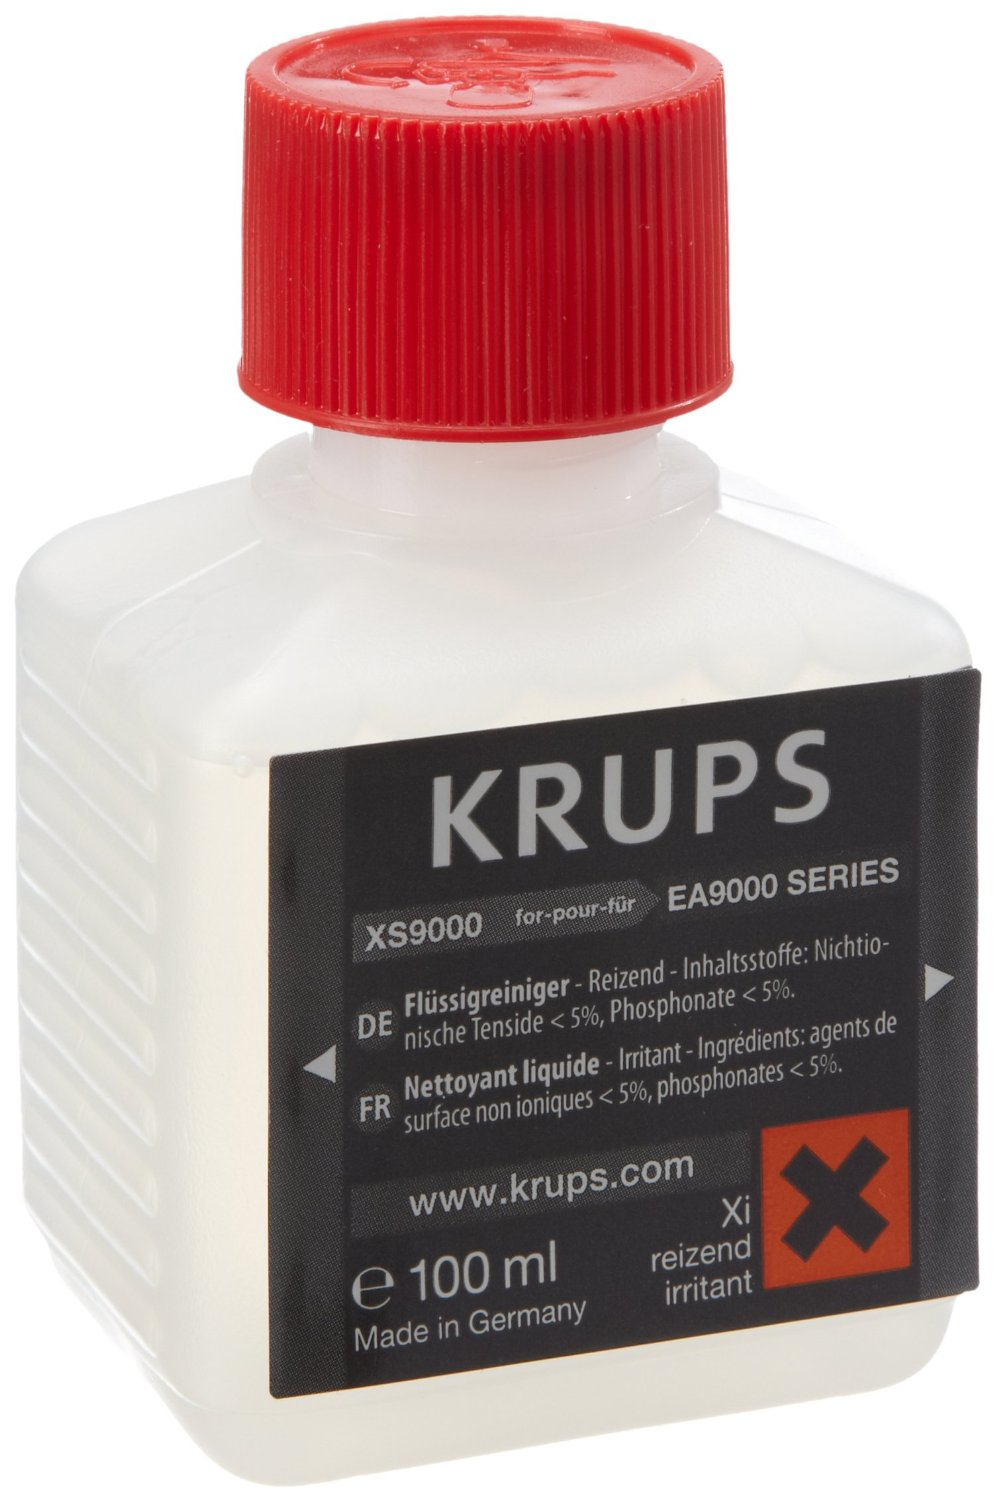 Krups XS 9000